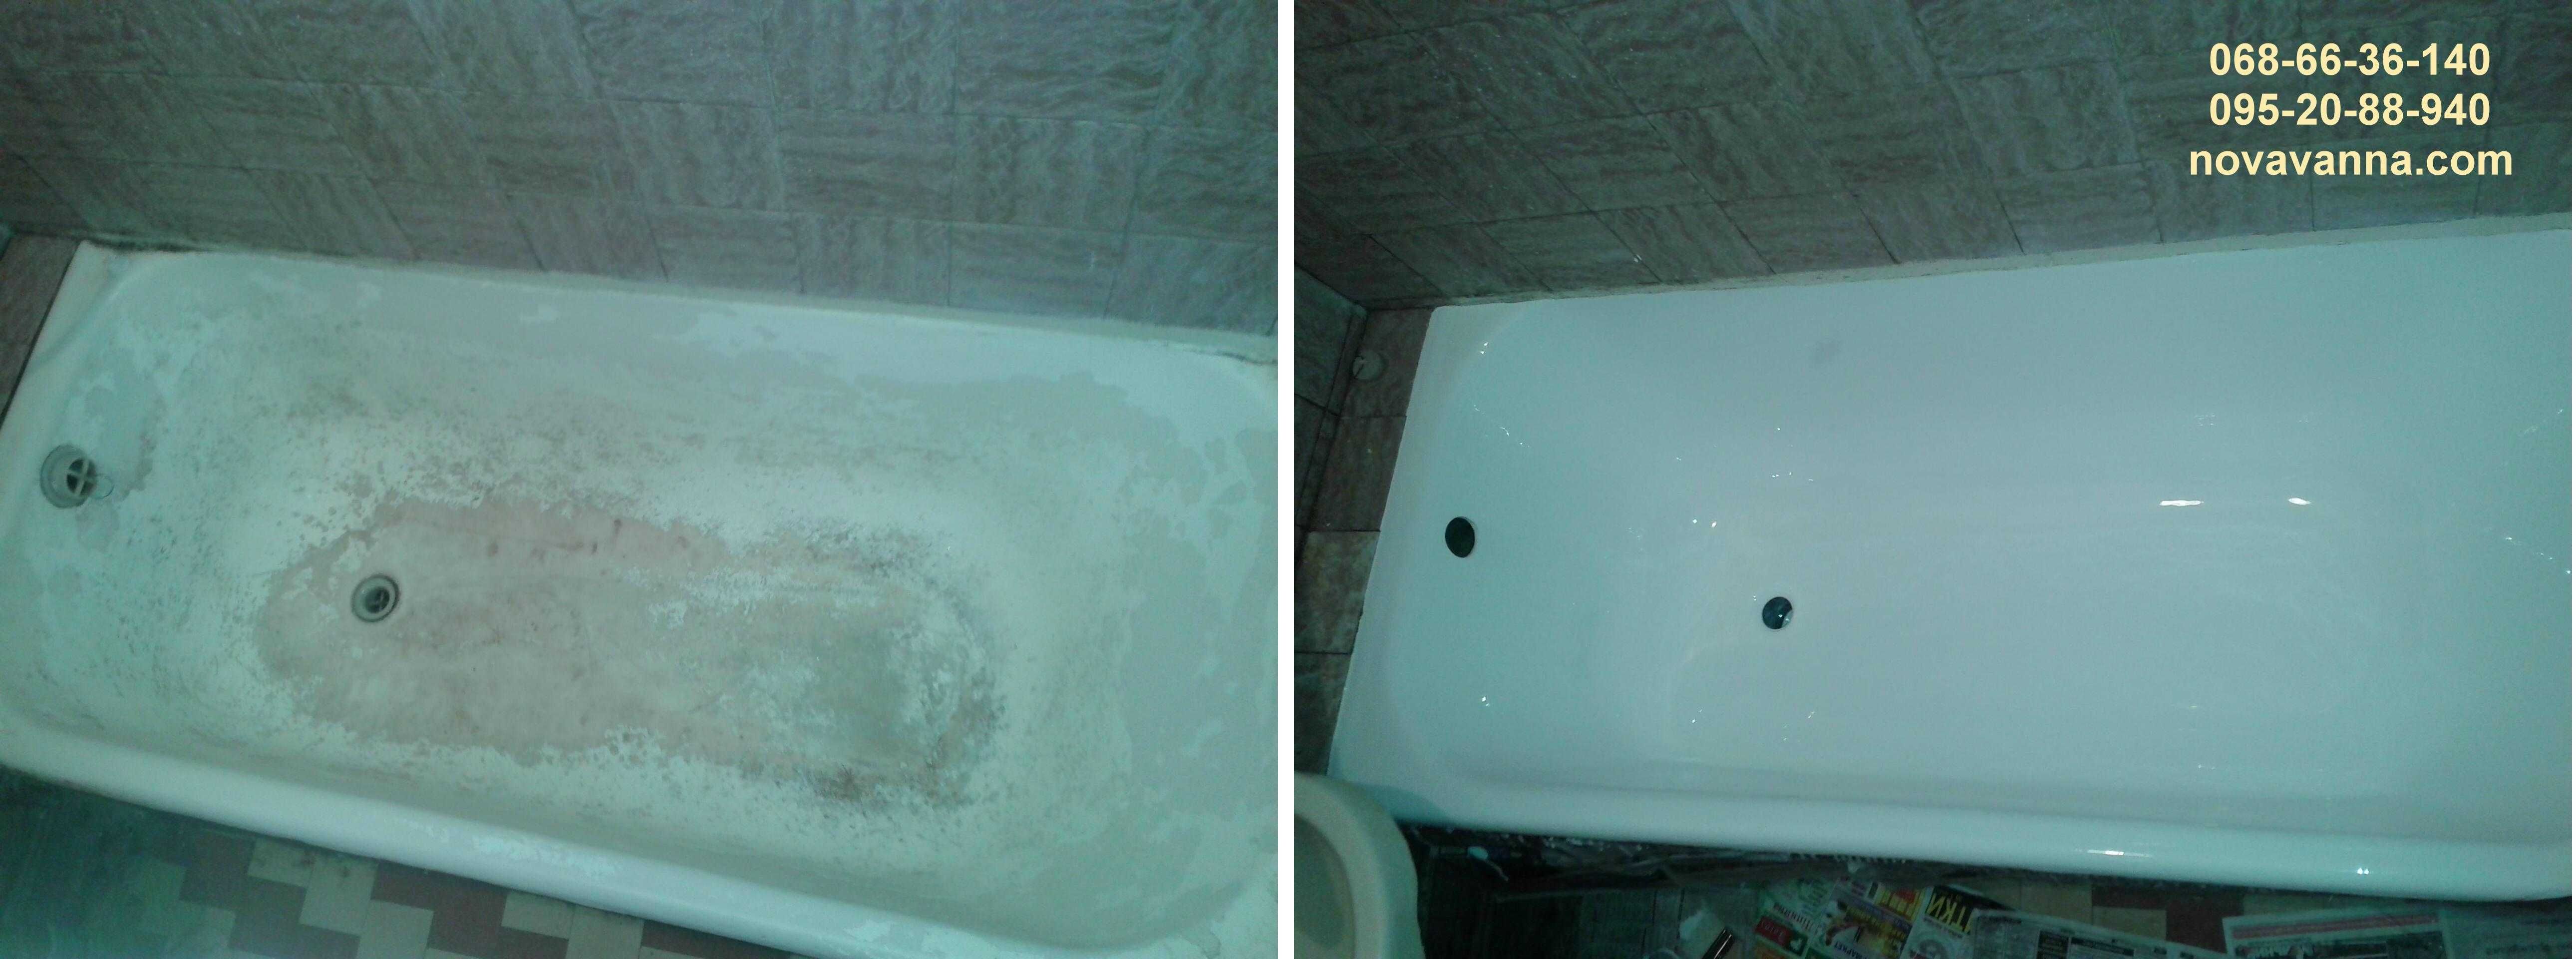 Реставрація ванн КАЛУШ. Відновлення ванн в Калуші. Якісно! Гарантія!